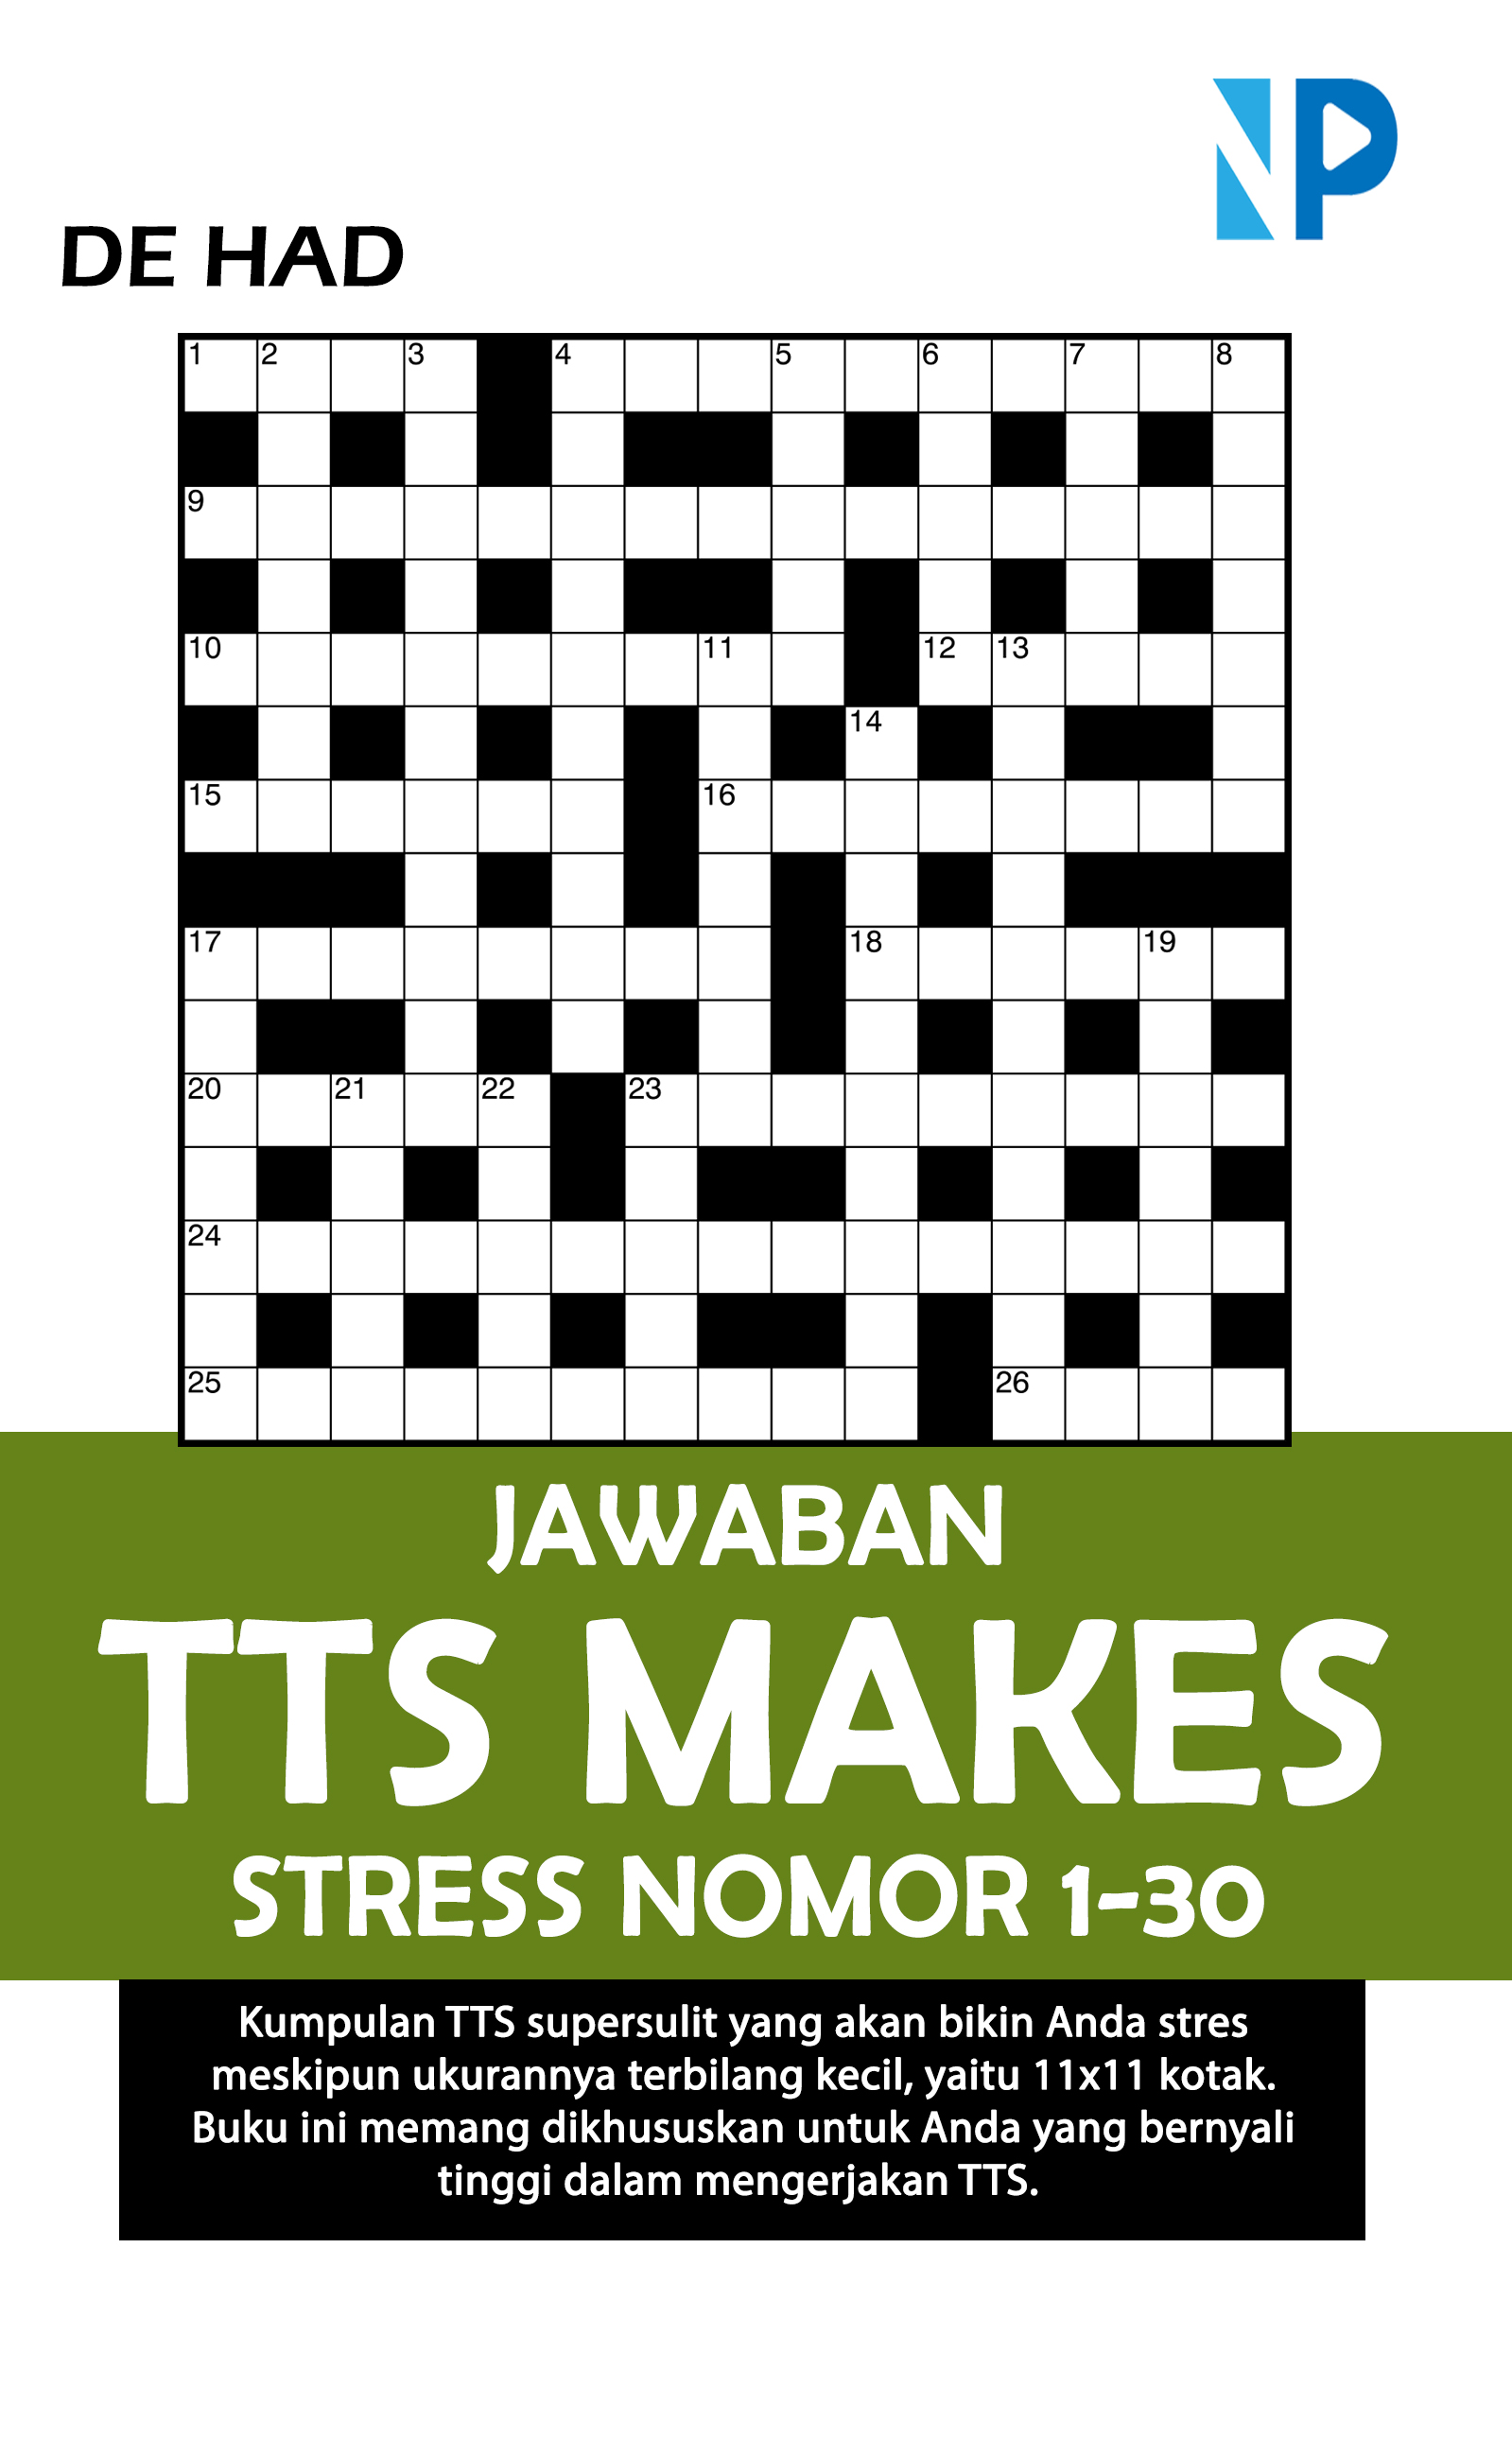 Jawaban TTS makes stress nomor 1-30 [sumber elektronis]